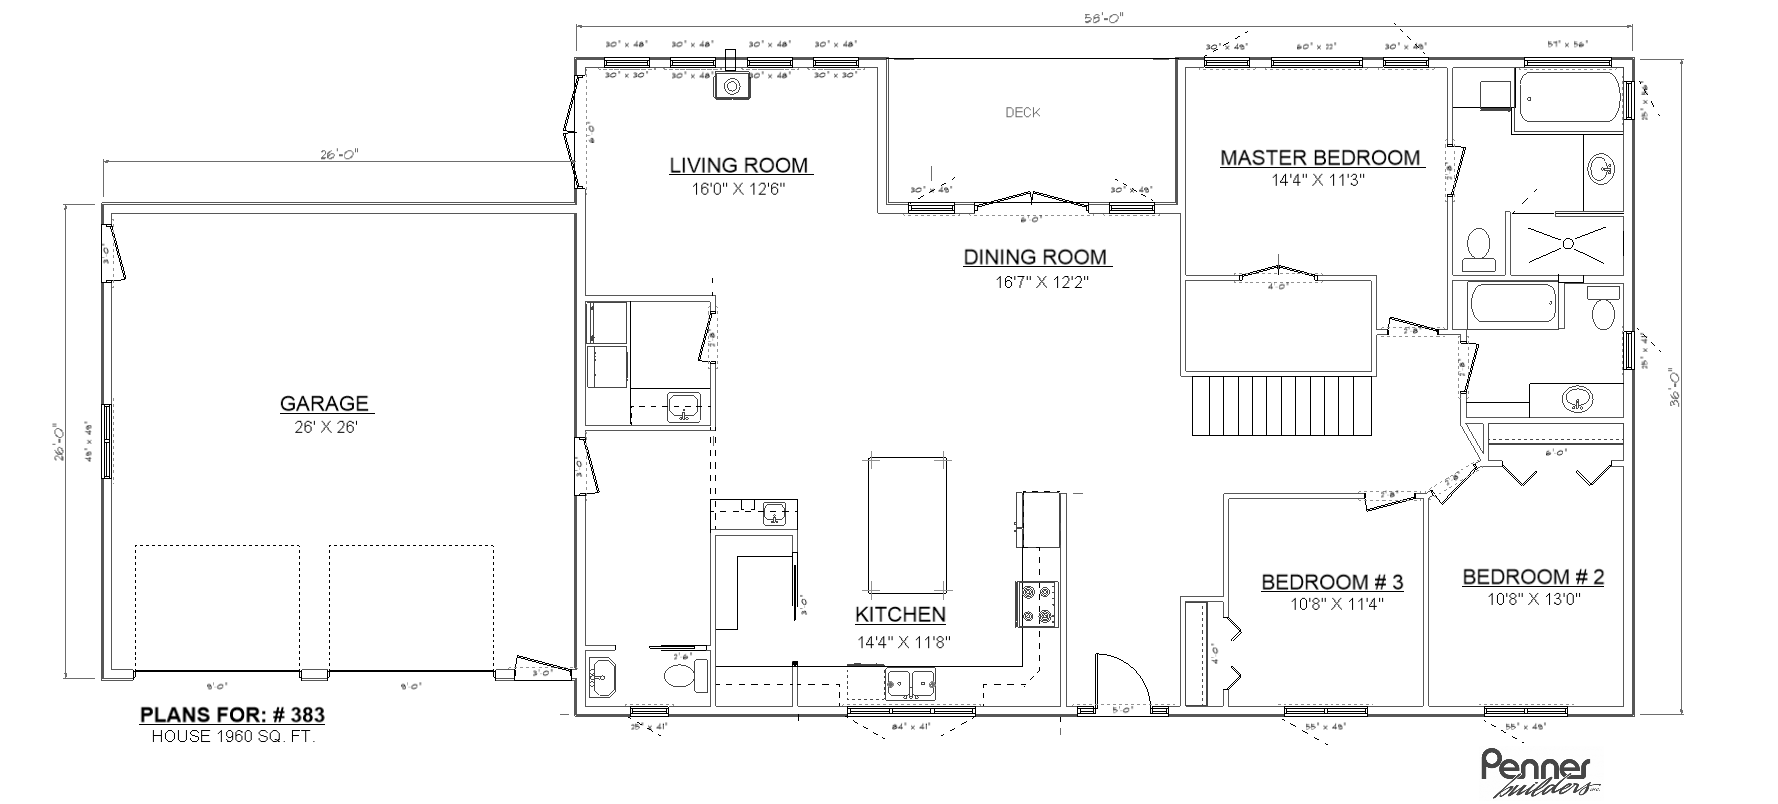 Penner Homes Floor Plan Id: 383